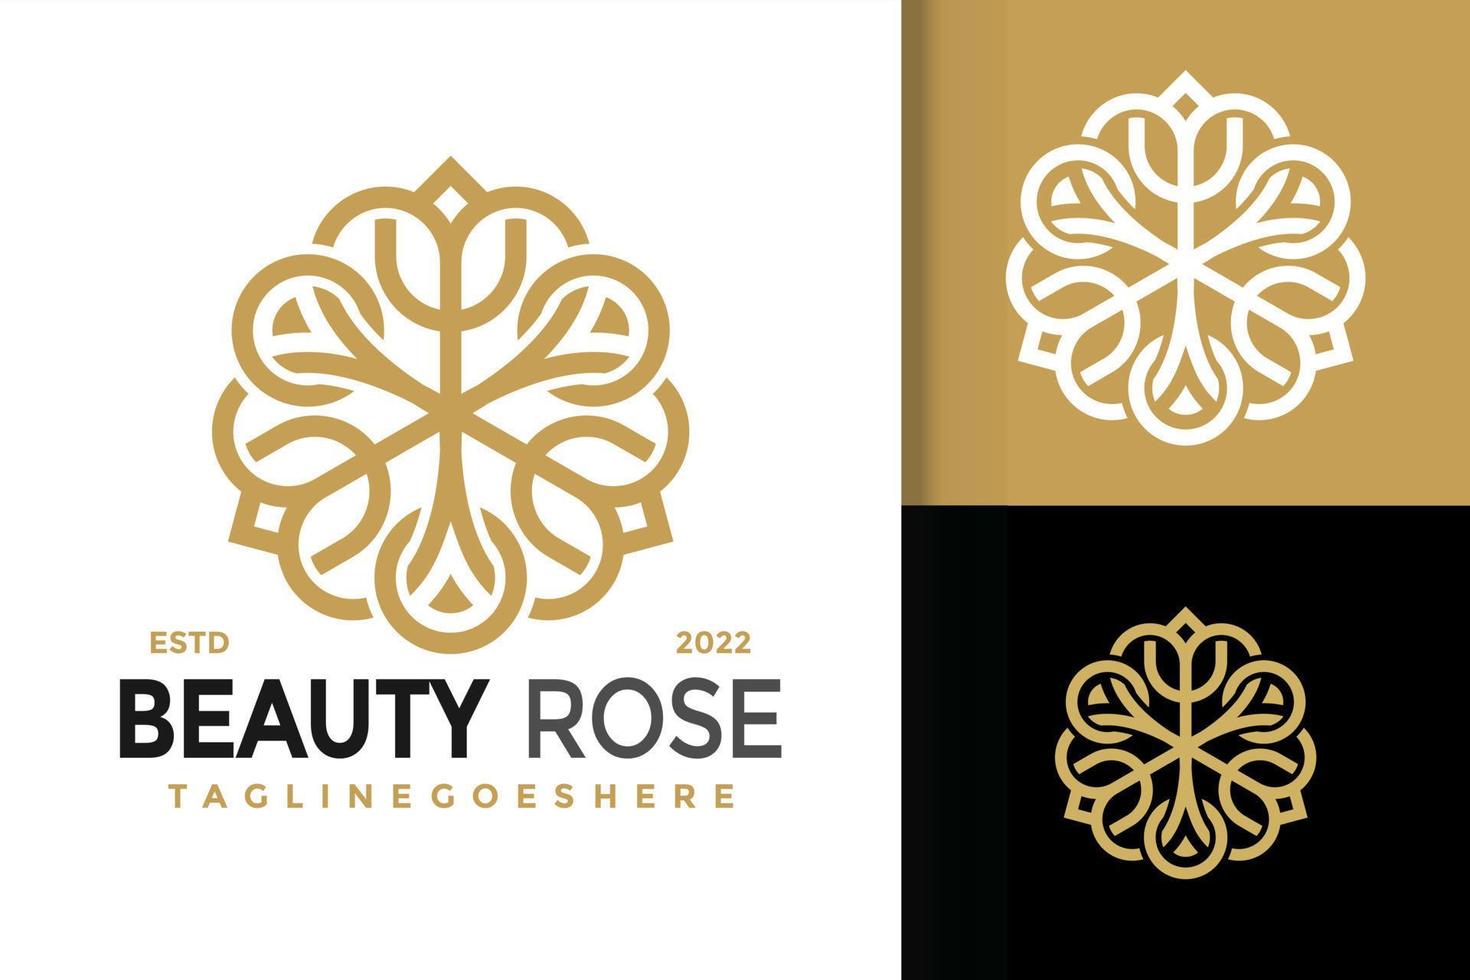 création de logo rose beauté élégante, vecteur de logos d'identité de marque, logo moderne, modèle d'illustration vectorielle de dessins de logo